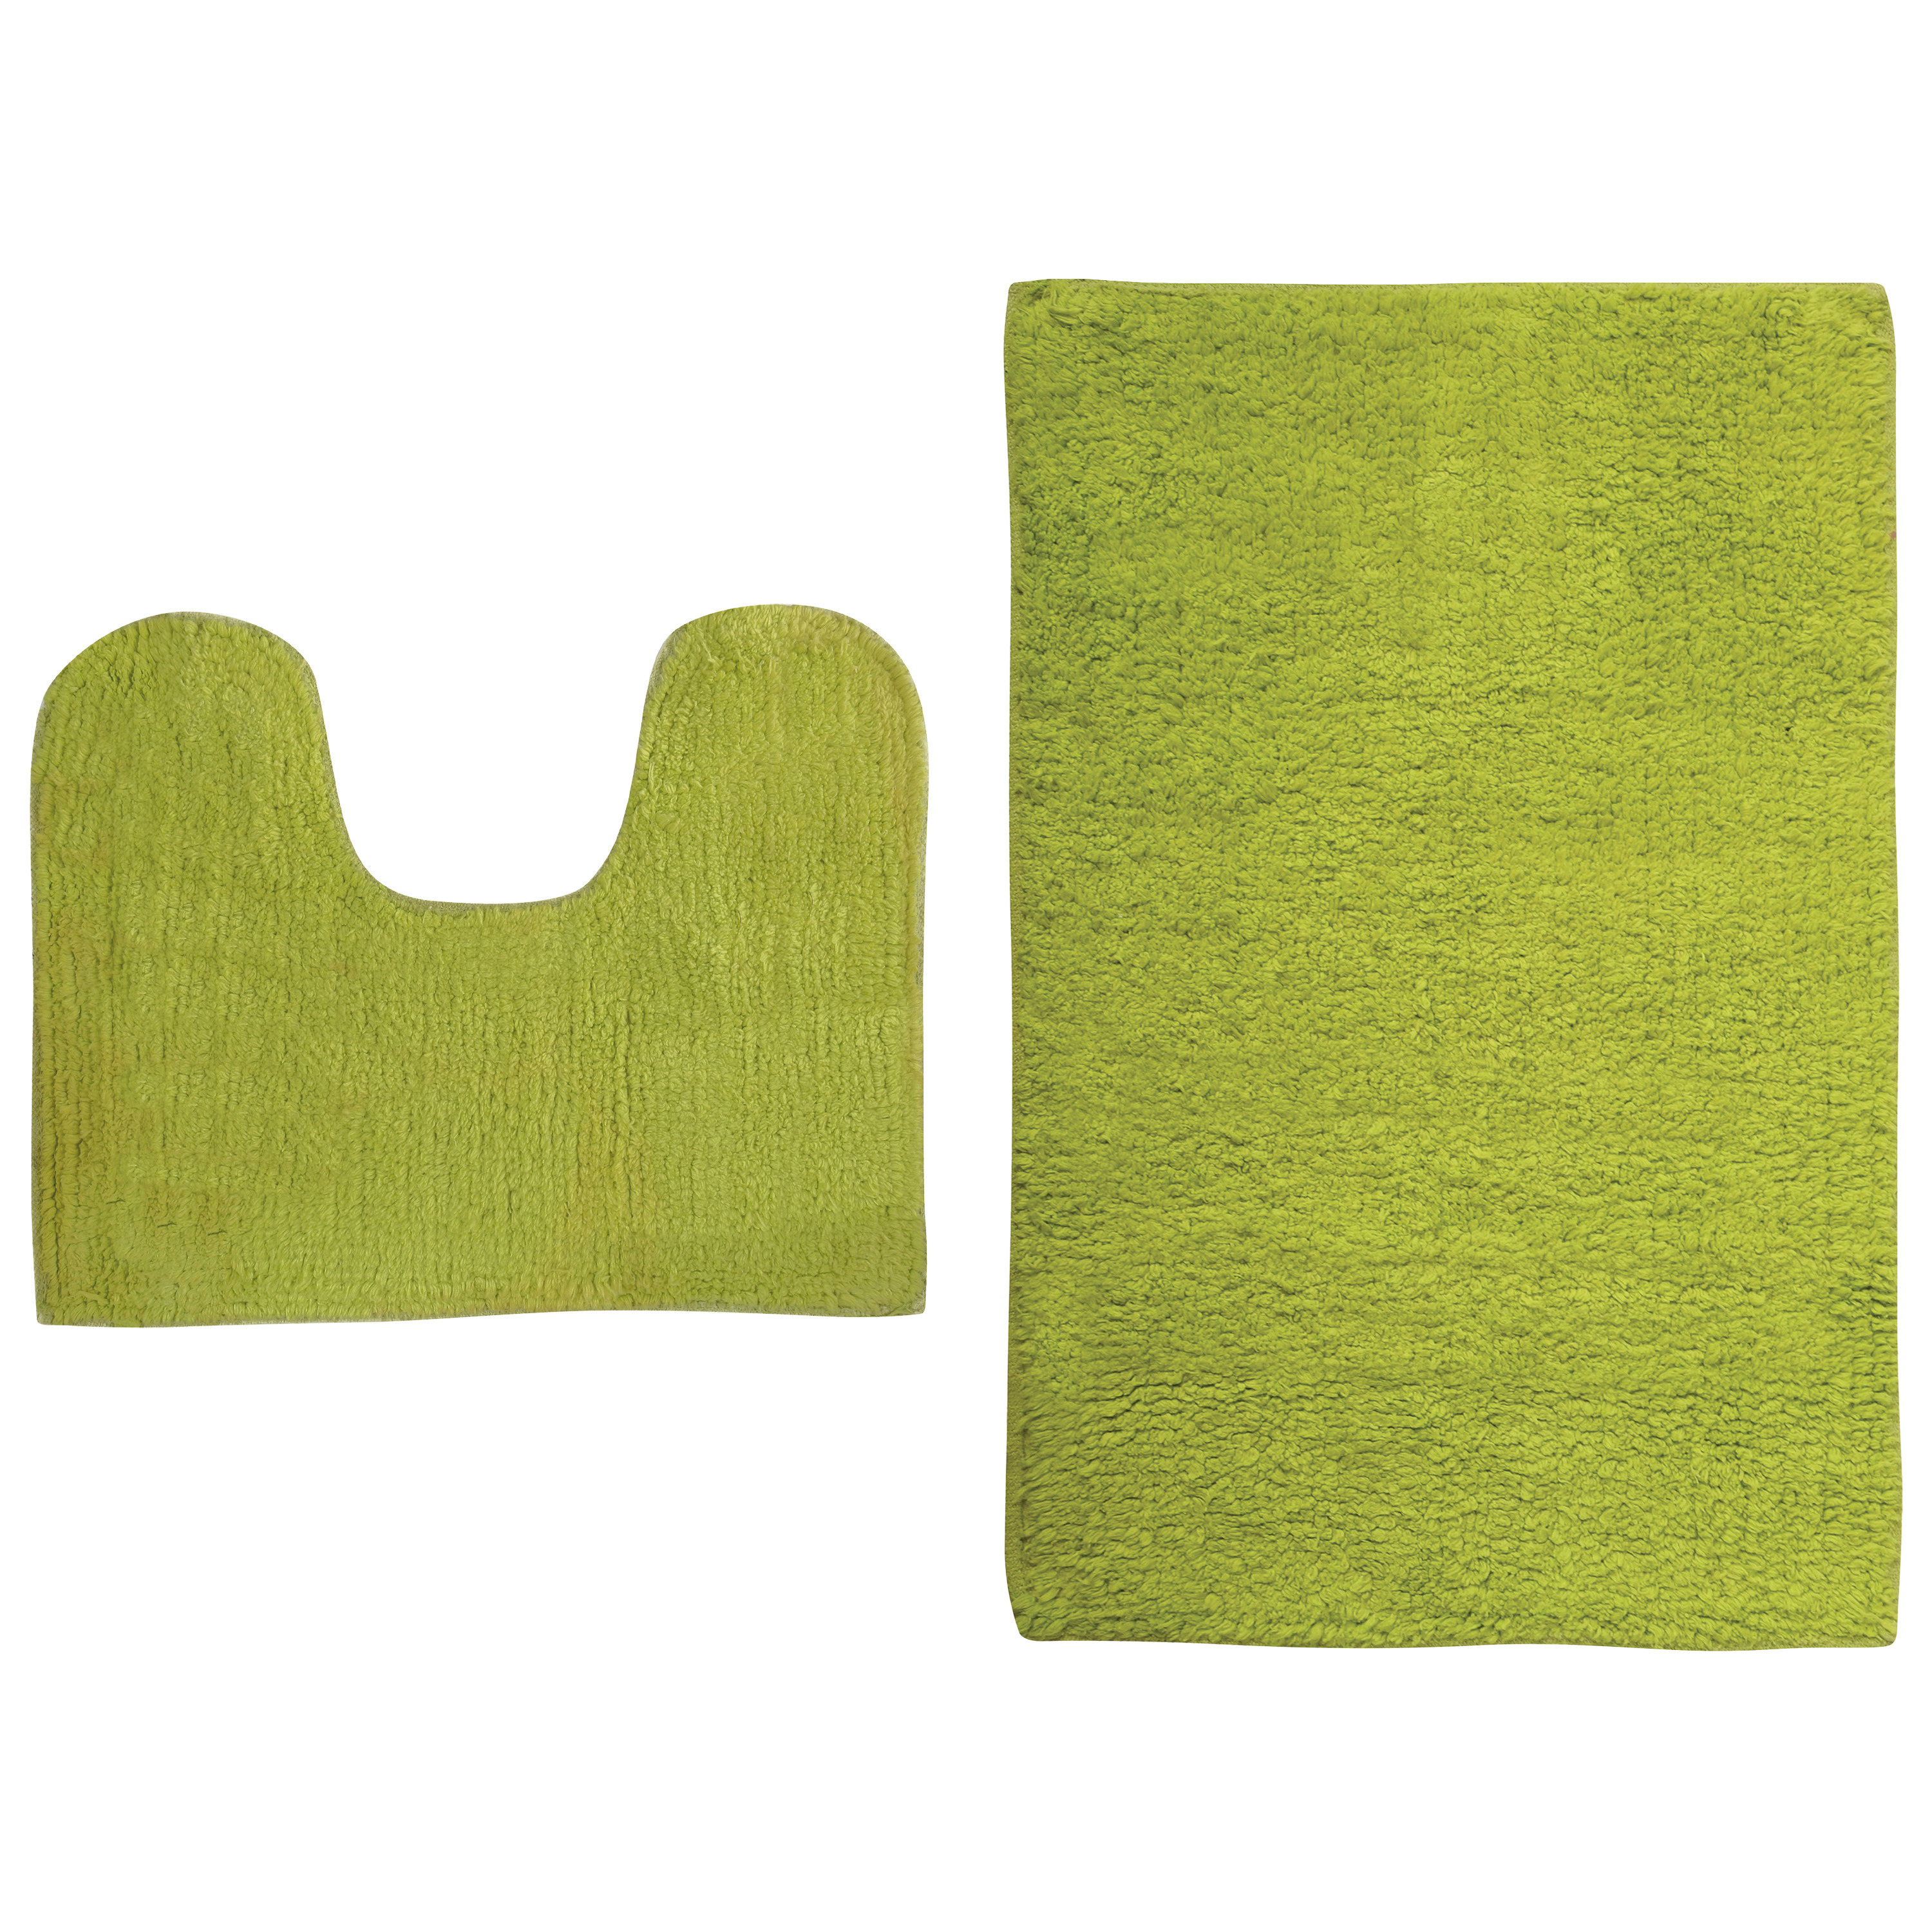 MSV Badkamerkleedje-badmatten set voor op de vloer lime-appel groen 45 x 70 cm-45 x 35 cm